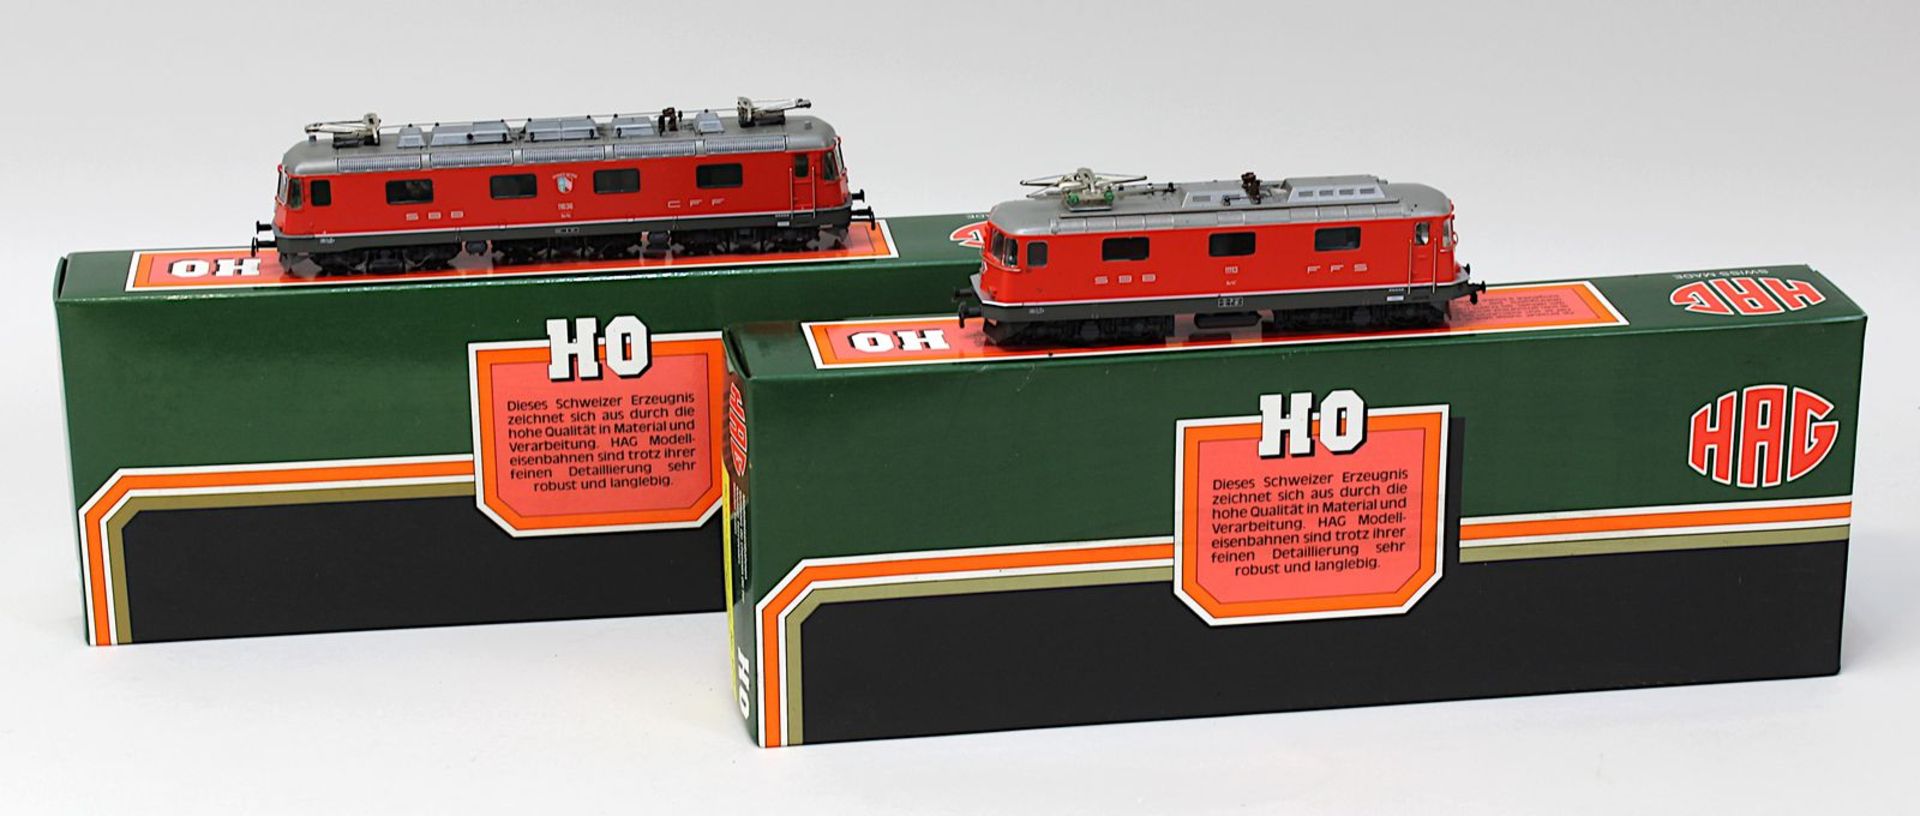 2 HAG E - Loks, Spur H0, Swiss Express Nr. 173 (verklebt mit Schaumstoffresten), SBB rot Nr. 208, in